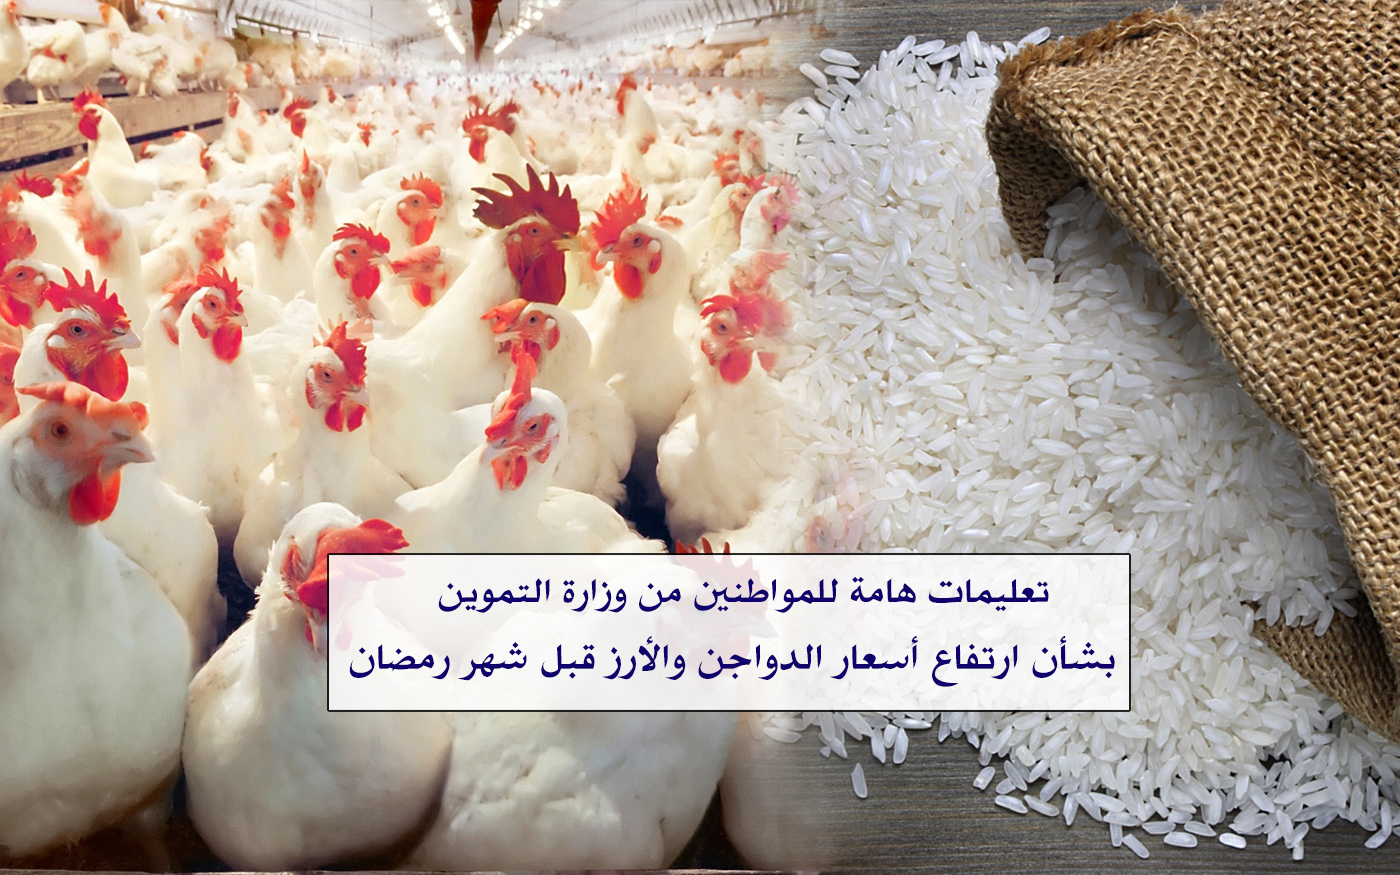 وزارة التموين تنفي أنباء ارتفاع أسعار الدواجن والأرز بالمجمعات الاستهلاكية وتوجيهات مهمة للمواطنين